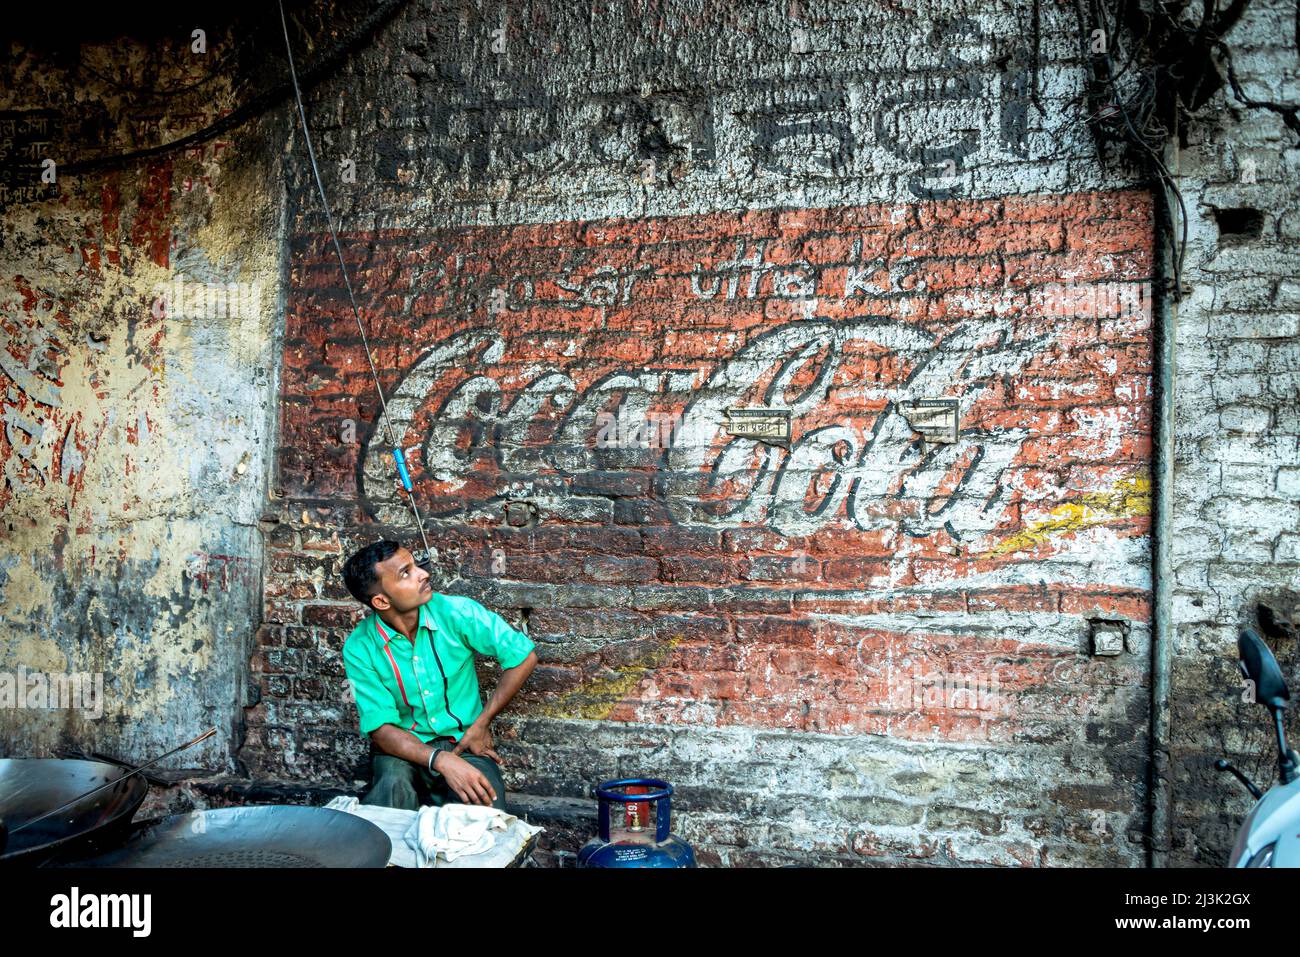 Der Mensch sitzt und schaut auf ein verblasstes Cola-Schild, das auf einer Ziegelmauer gemalt ist; Amritsar, Punjab, Indien Stockfoto